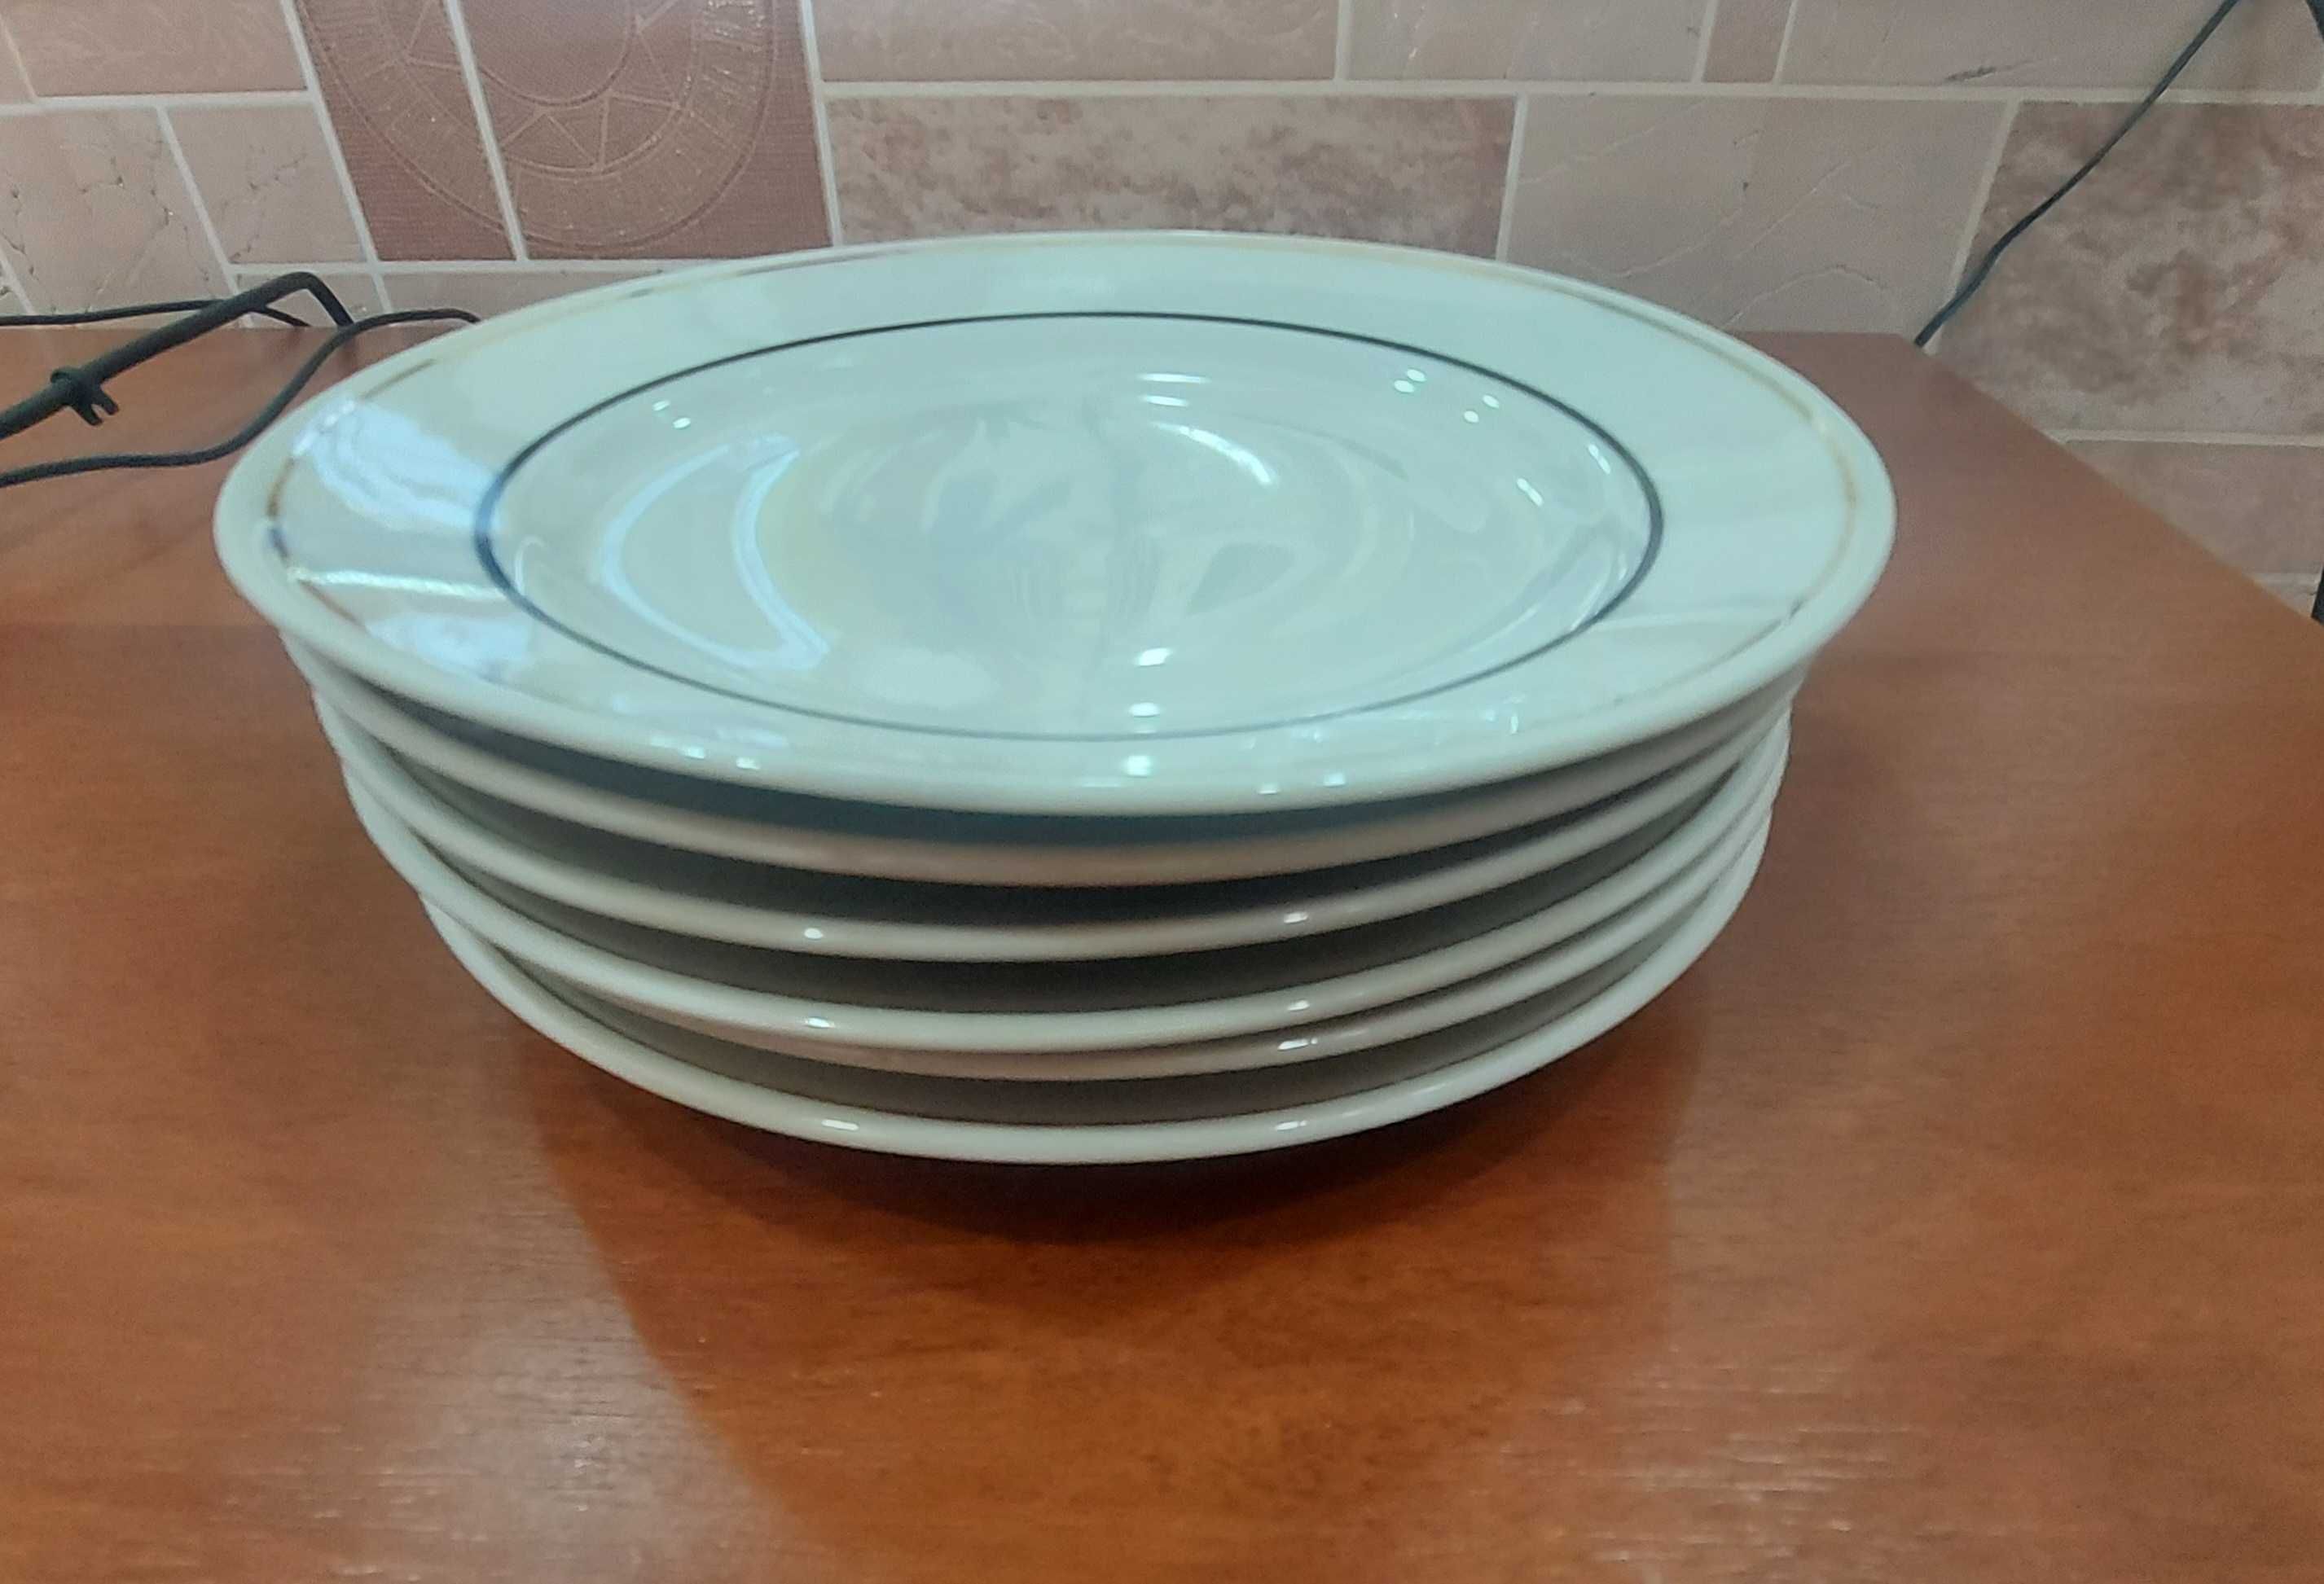 Фарфоровые тарелки по 10 тыс 1 шт. 3 разных набора по - 6 шт в каждом.